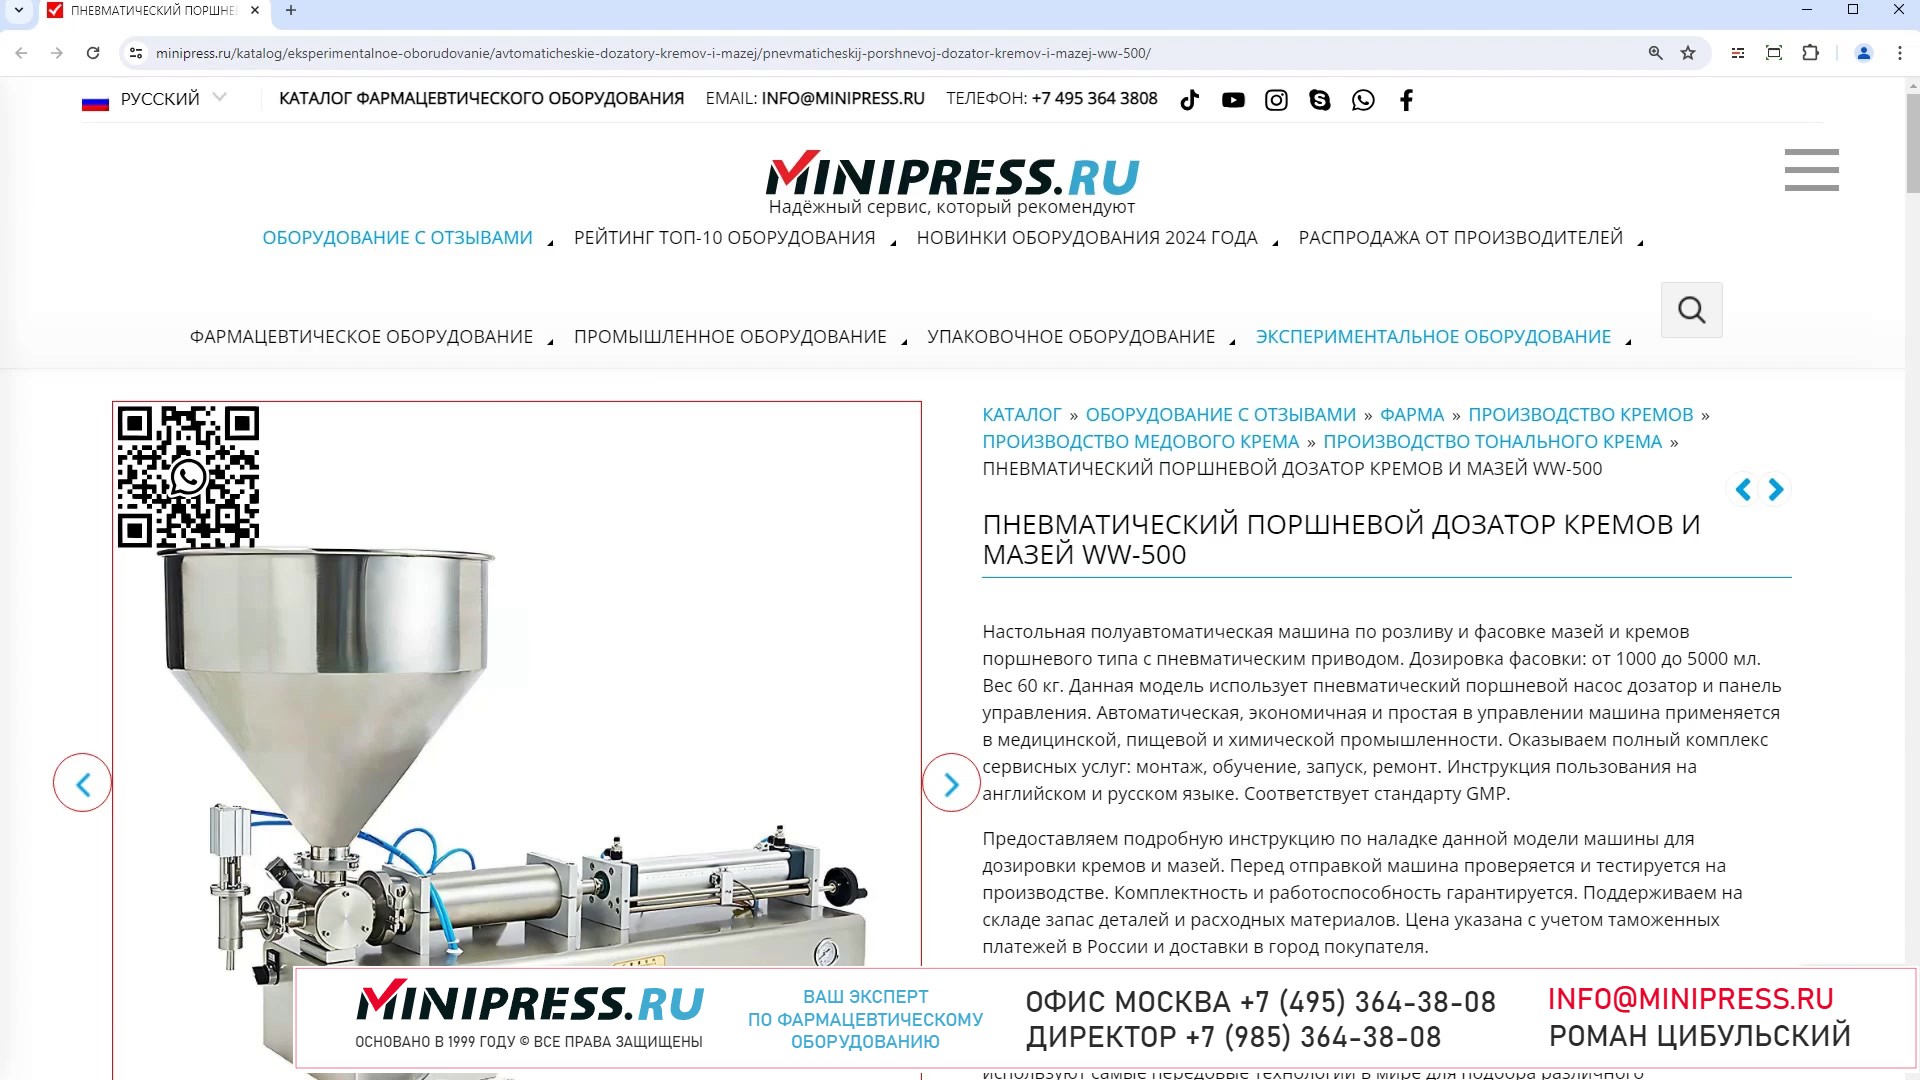 Minipress.ru Пневматический поршневой дозатор кремов и мазей WW-500